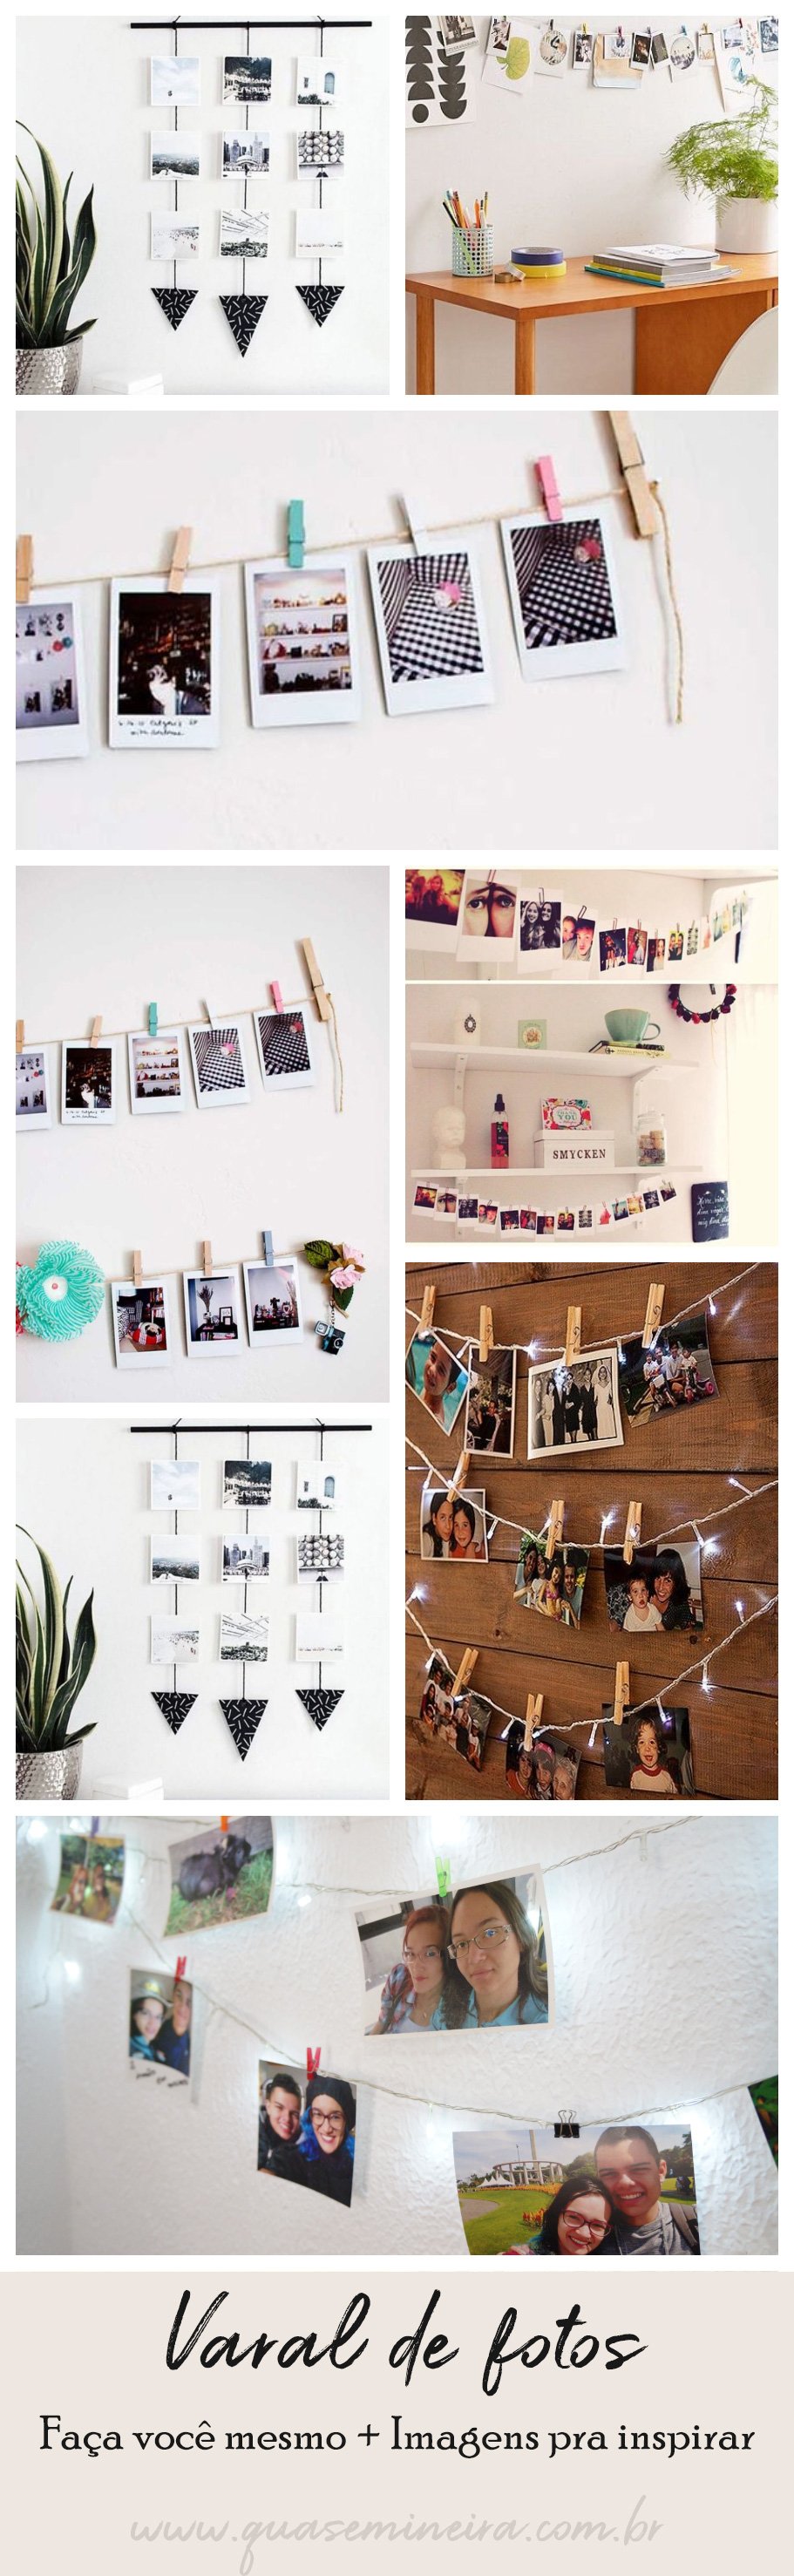 Varal de fotos — Saiba como usar na decoração!